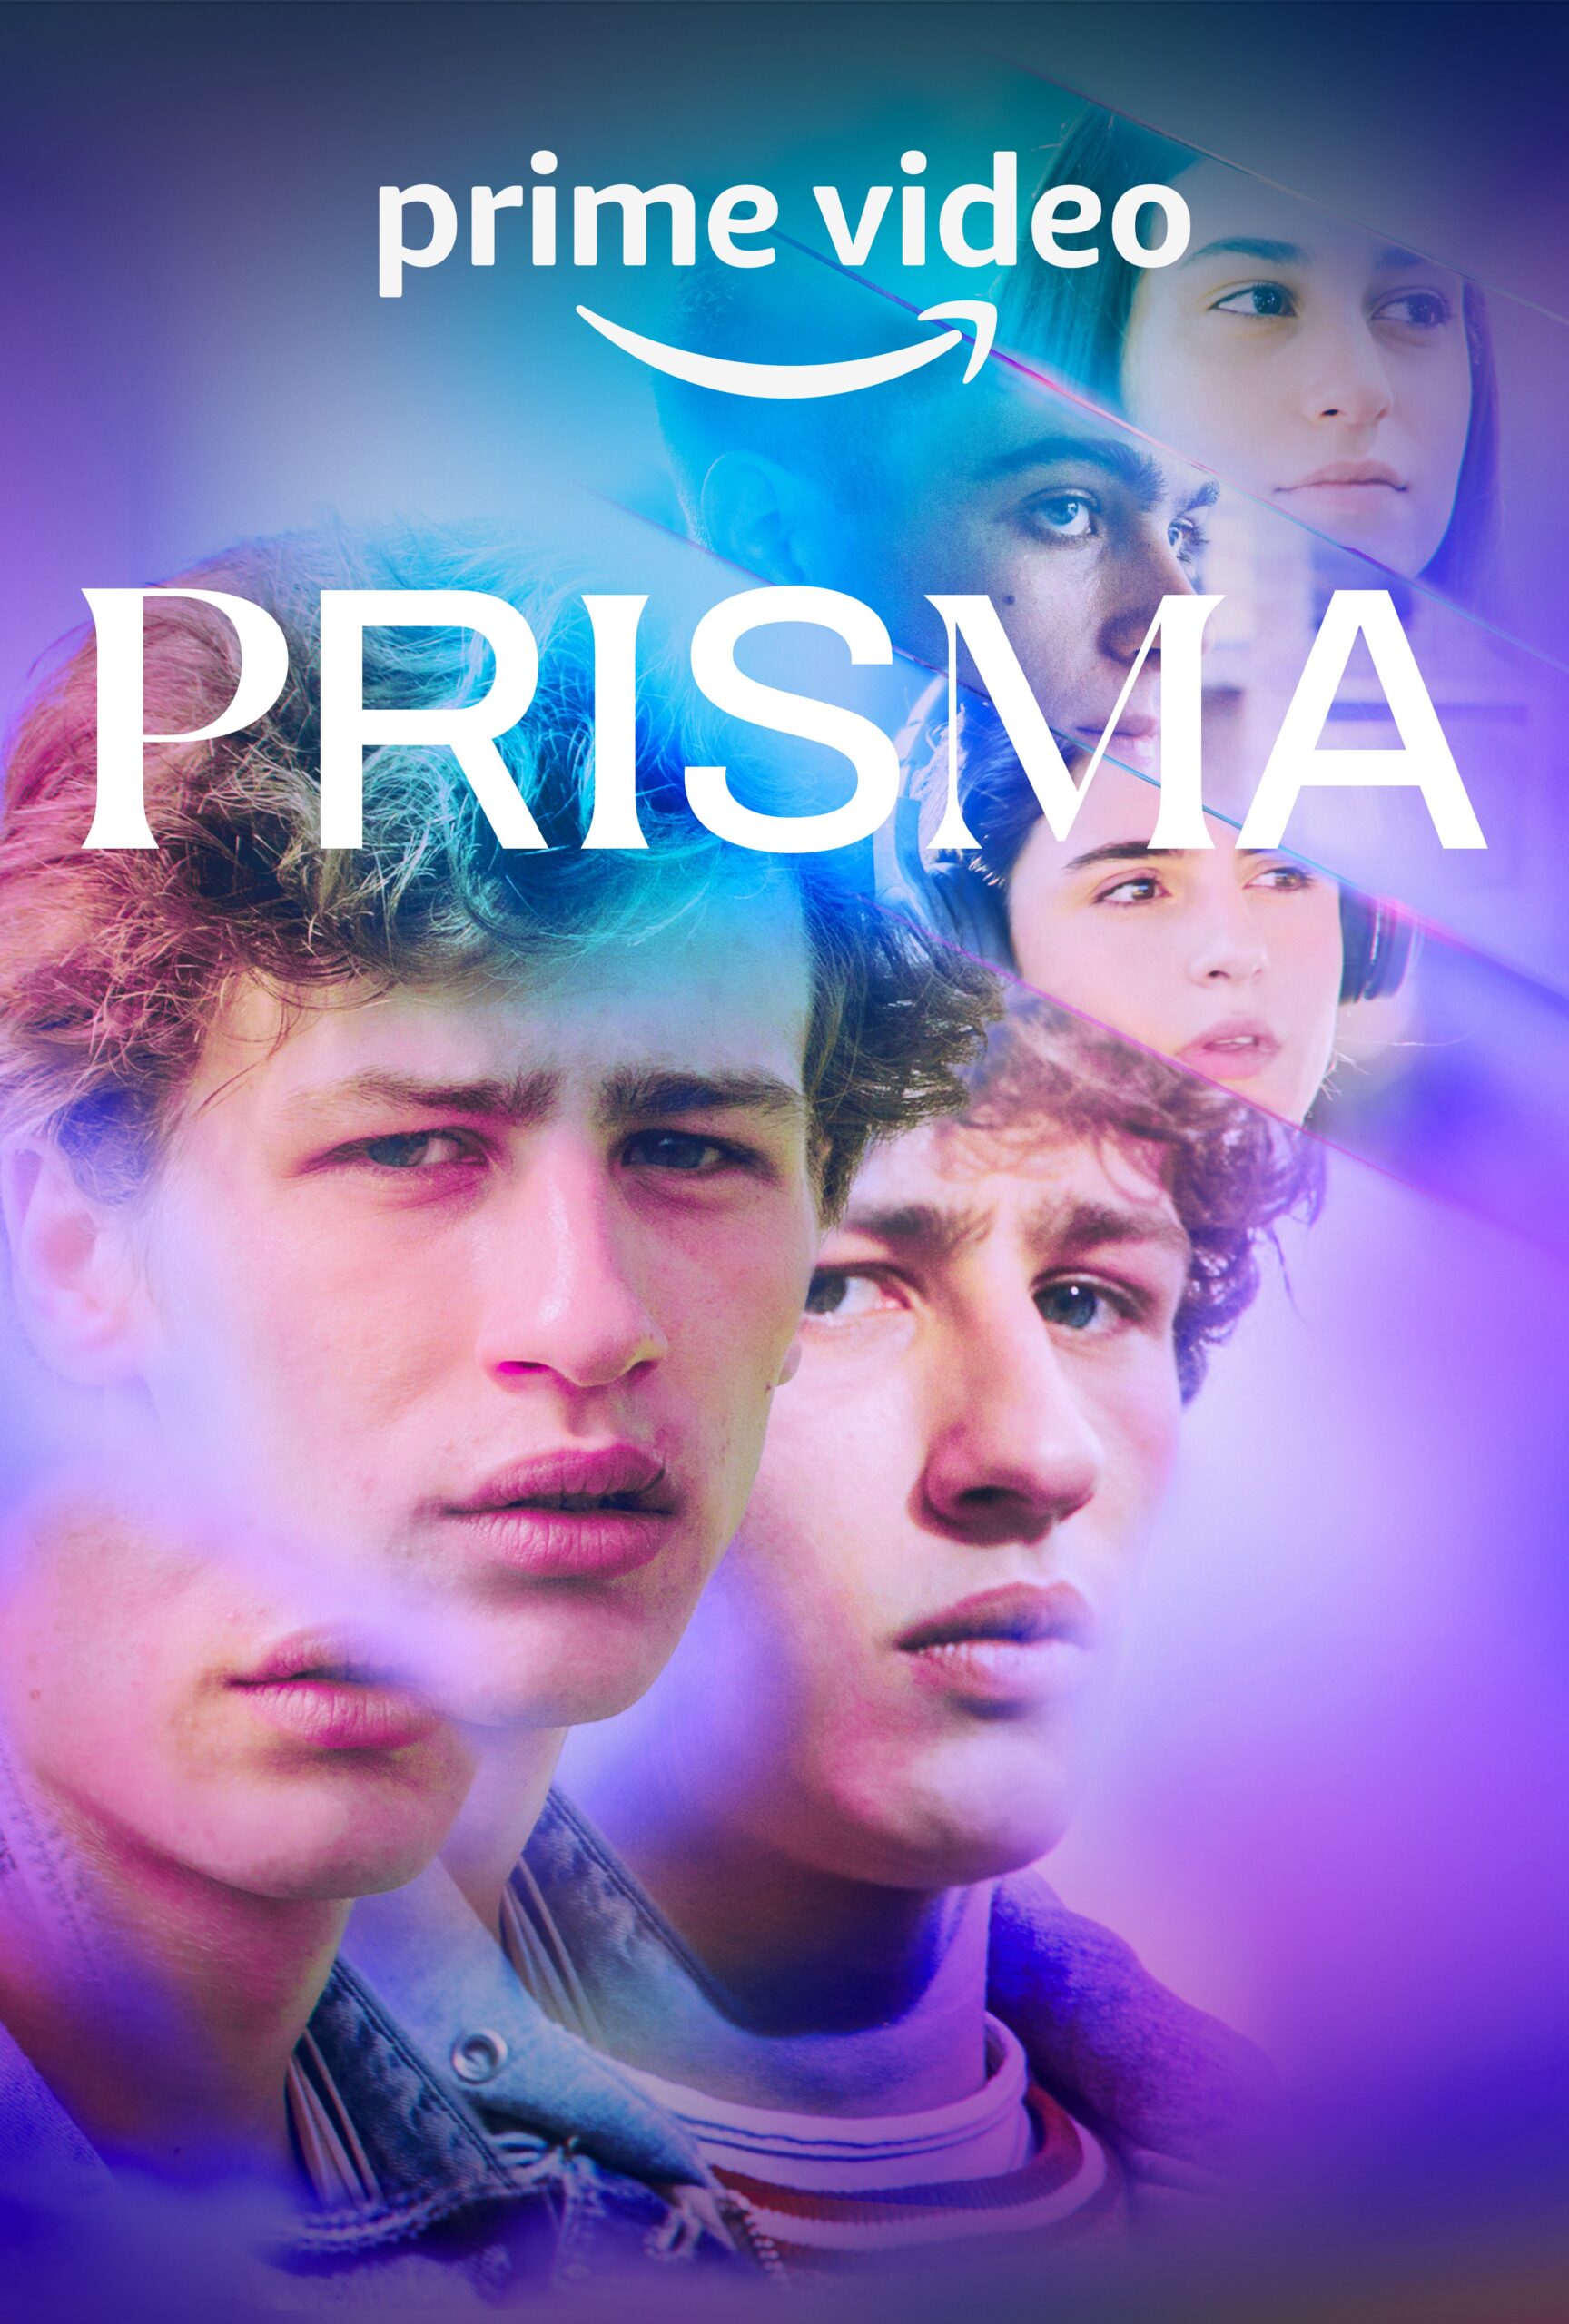 Prisma Episode 9 Release Date